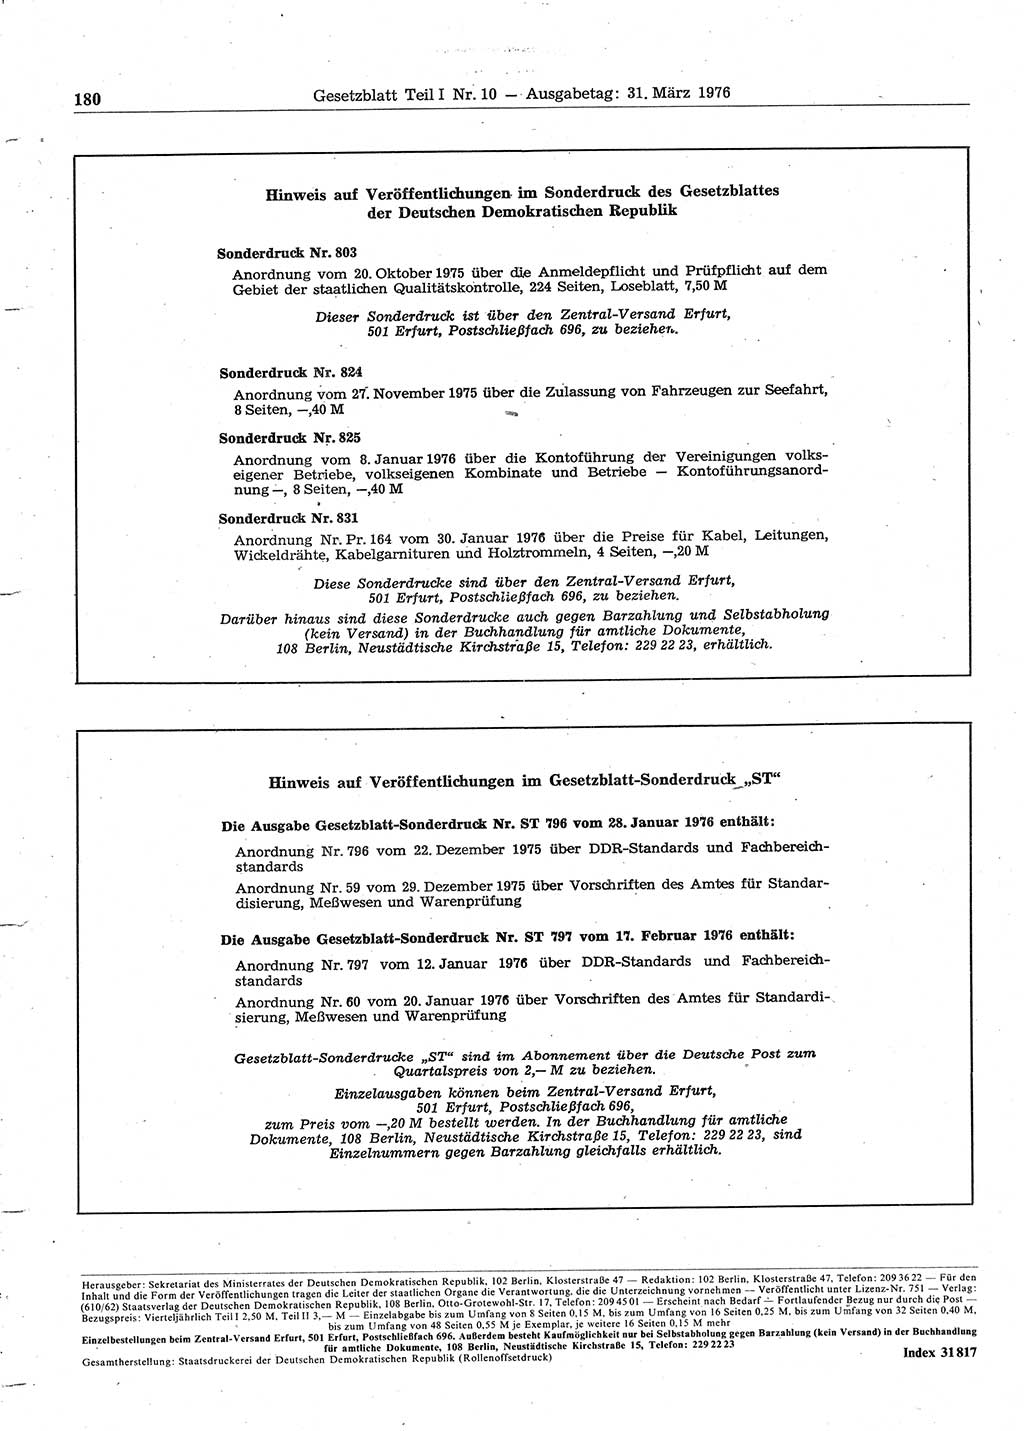 Gesetzblatt (GBl.) der Deutschen Demokratischen Republik (DDR) Teil Ⅰ 1976, Seite 180 (GBl. DDR Ⅰ 1976, S. 180)